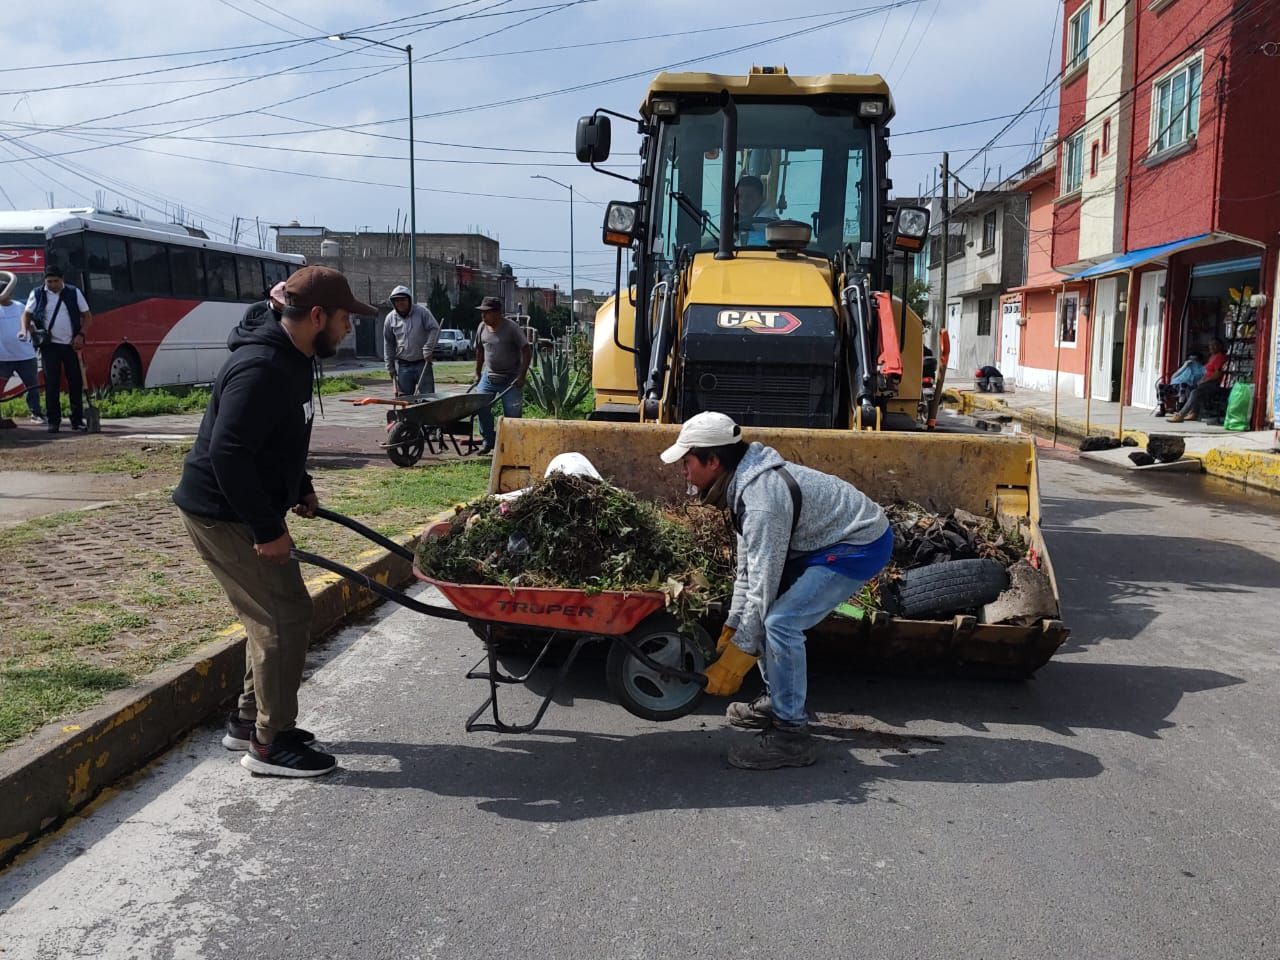 Servidores públicos de Chimalhuacán realizan jornada de limpieza en barrio fundidores 